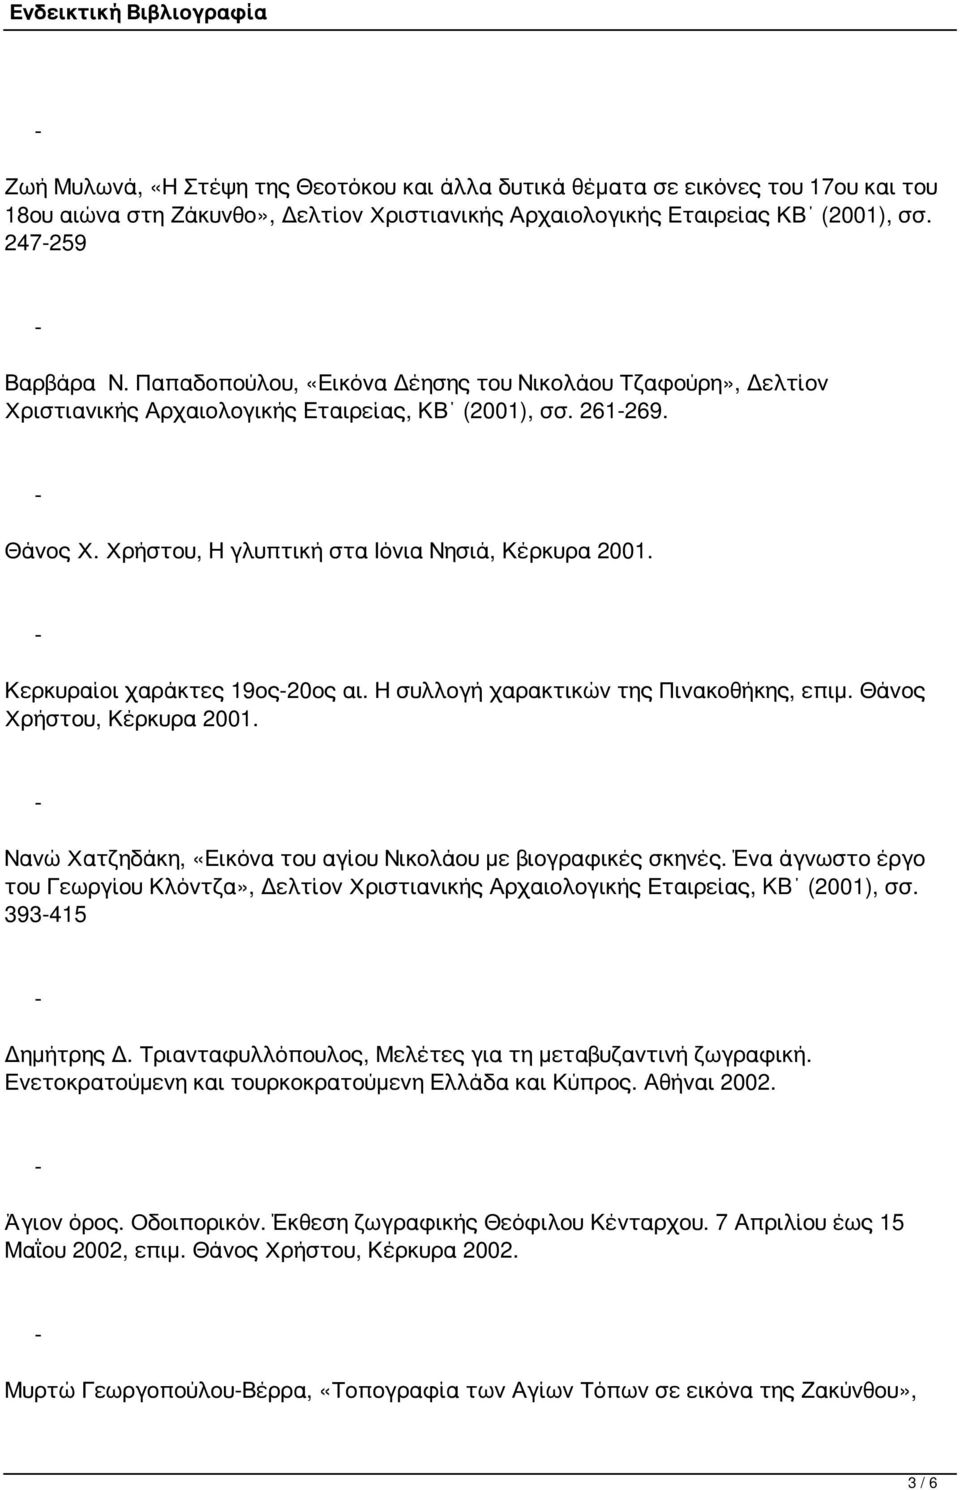 Κερκυραίοι χαράκτες 19ος20ος αι. Η συλλογή χαρακτικών της Πινακοθήκης, επιμ. Θάνος Χρήστου, Κέρκυρα 2001. Νανώ Χατζηδάκη, «Εικόνα του αγίου Νικολάου με βιογραφικές σκηνές.